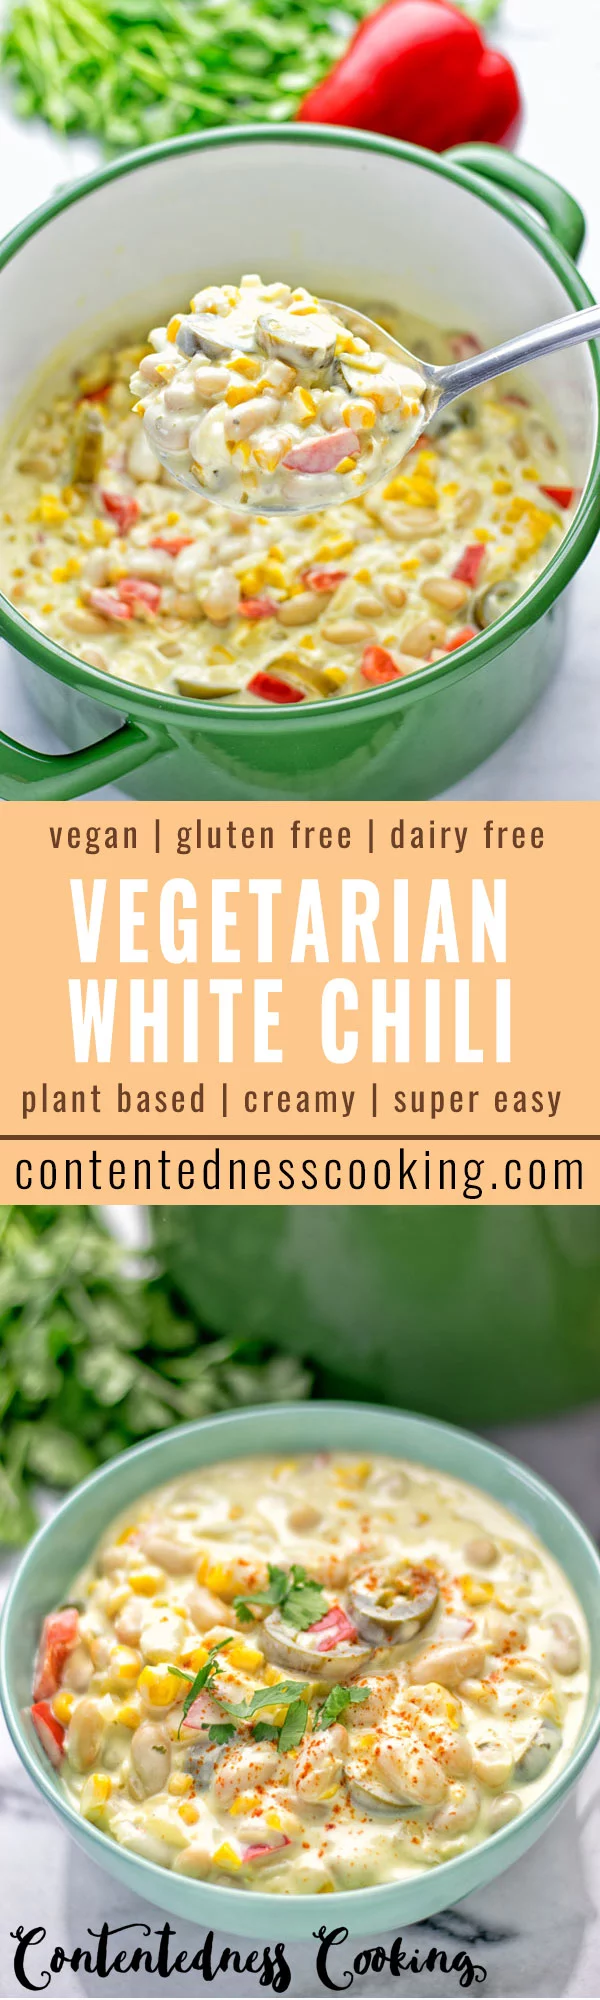 Vegetarian White Chili | #vegan #glutenfree #contentednesscooking